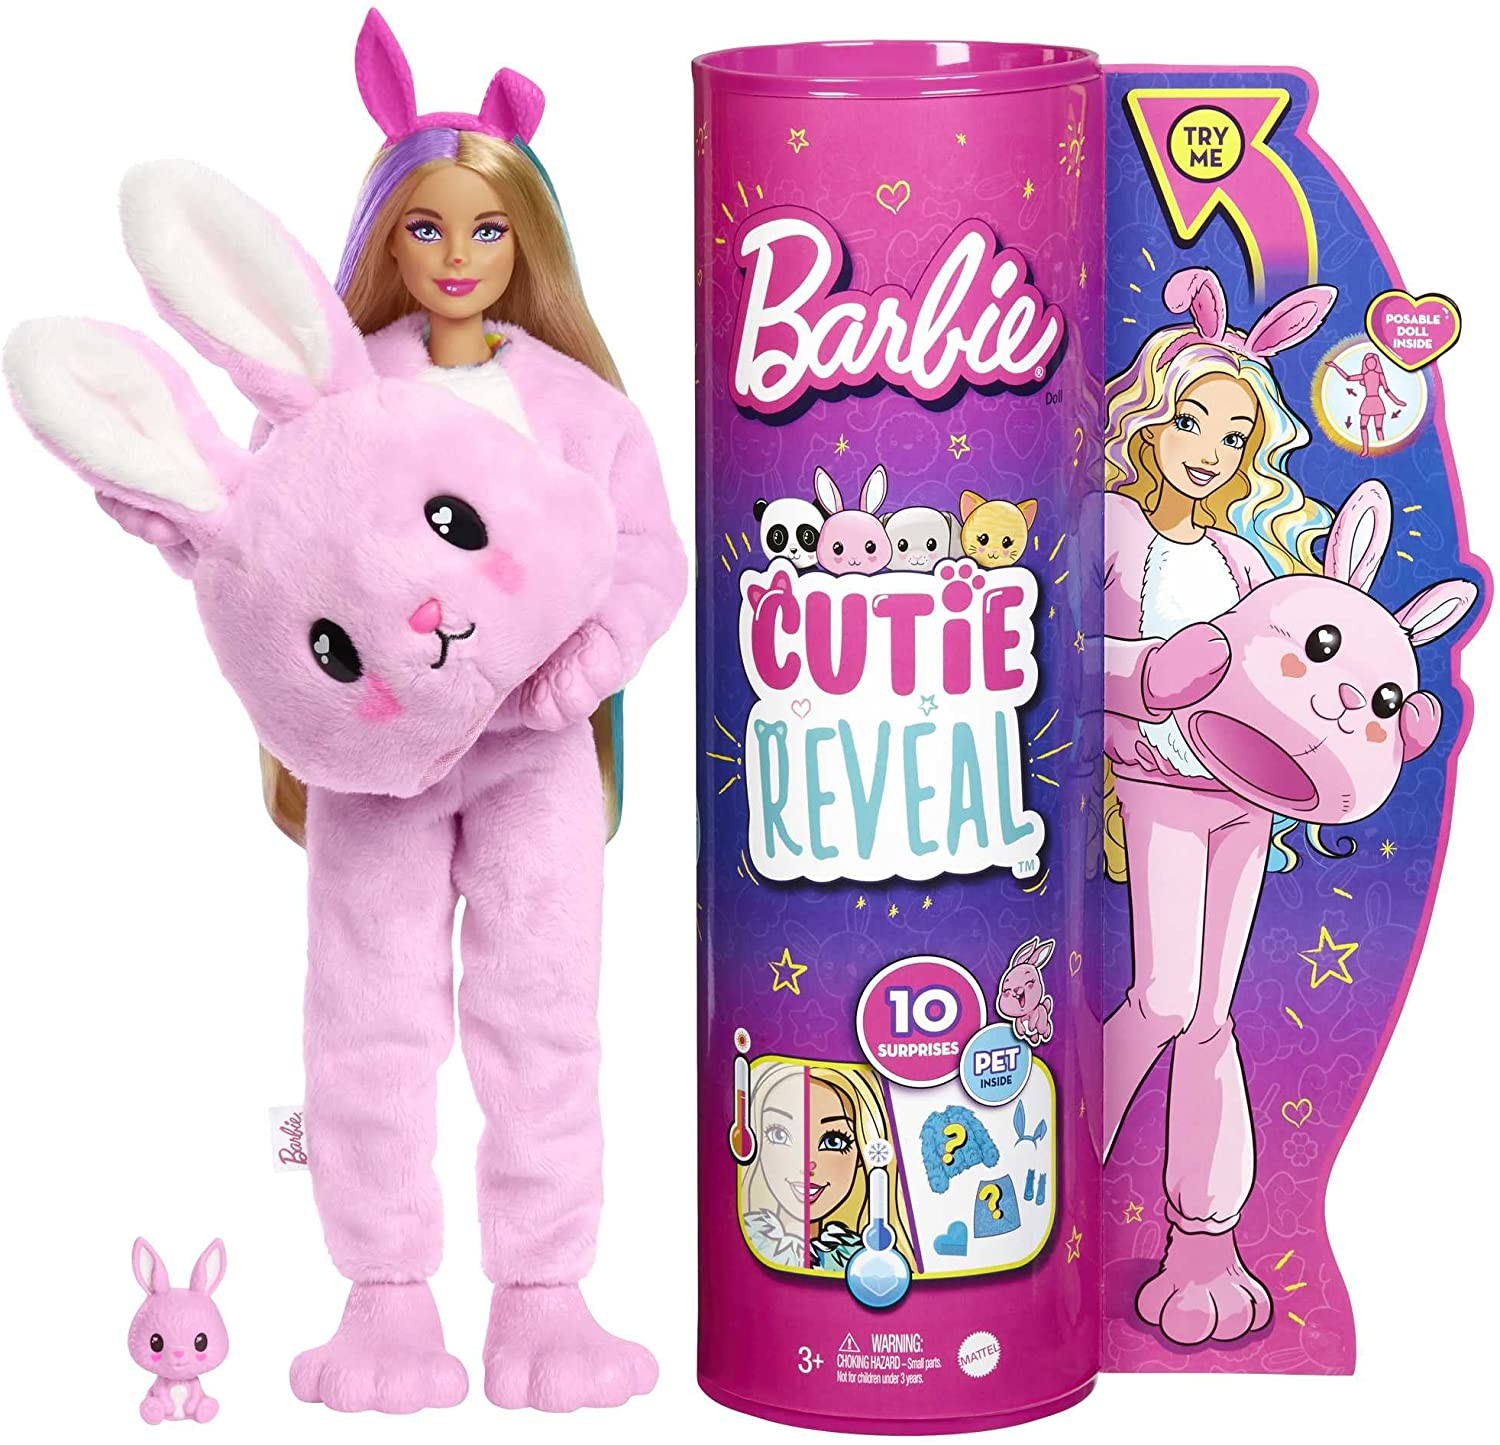 roupinha roupa fantasia para boneca barbie- kit com 2 peças